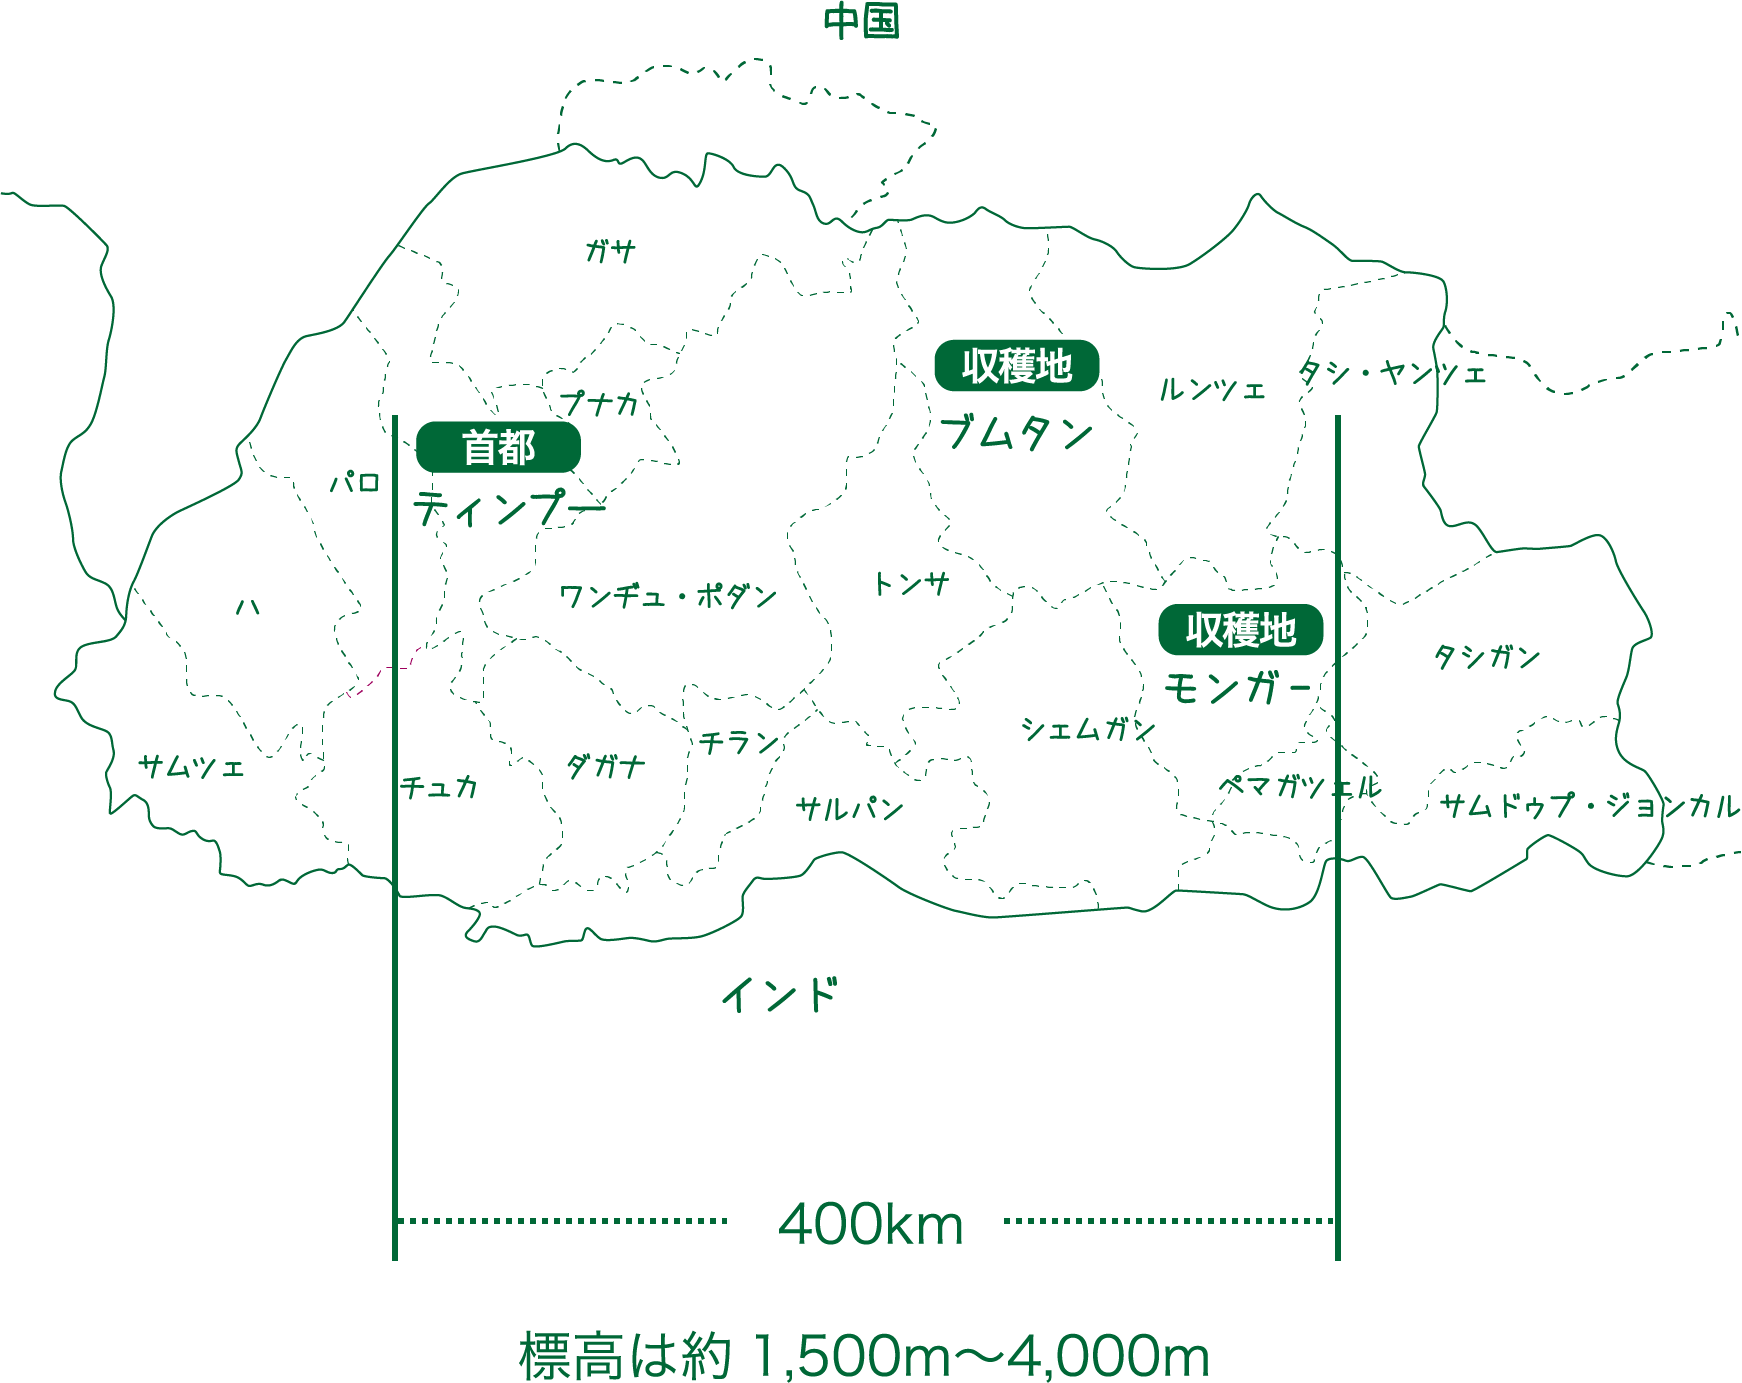 ブータンマップ